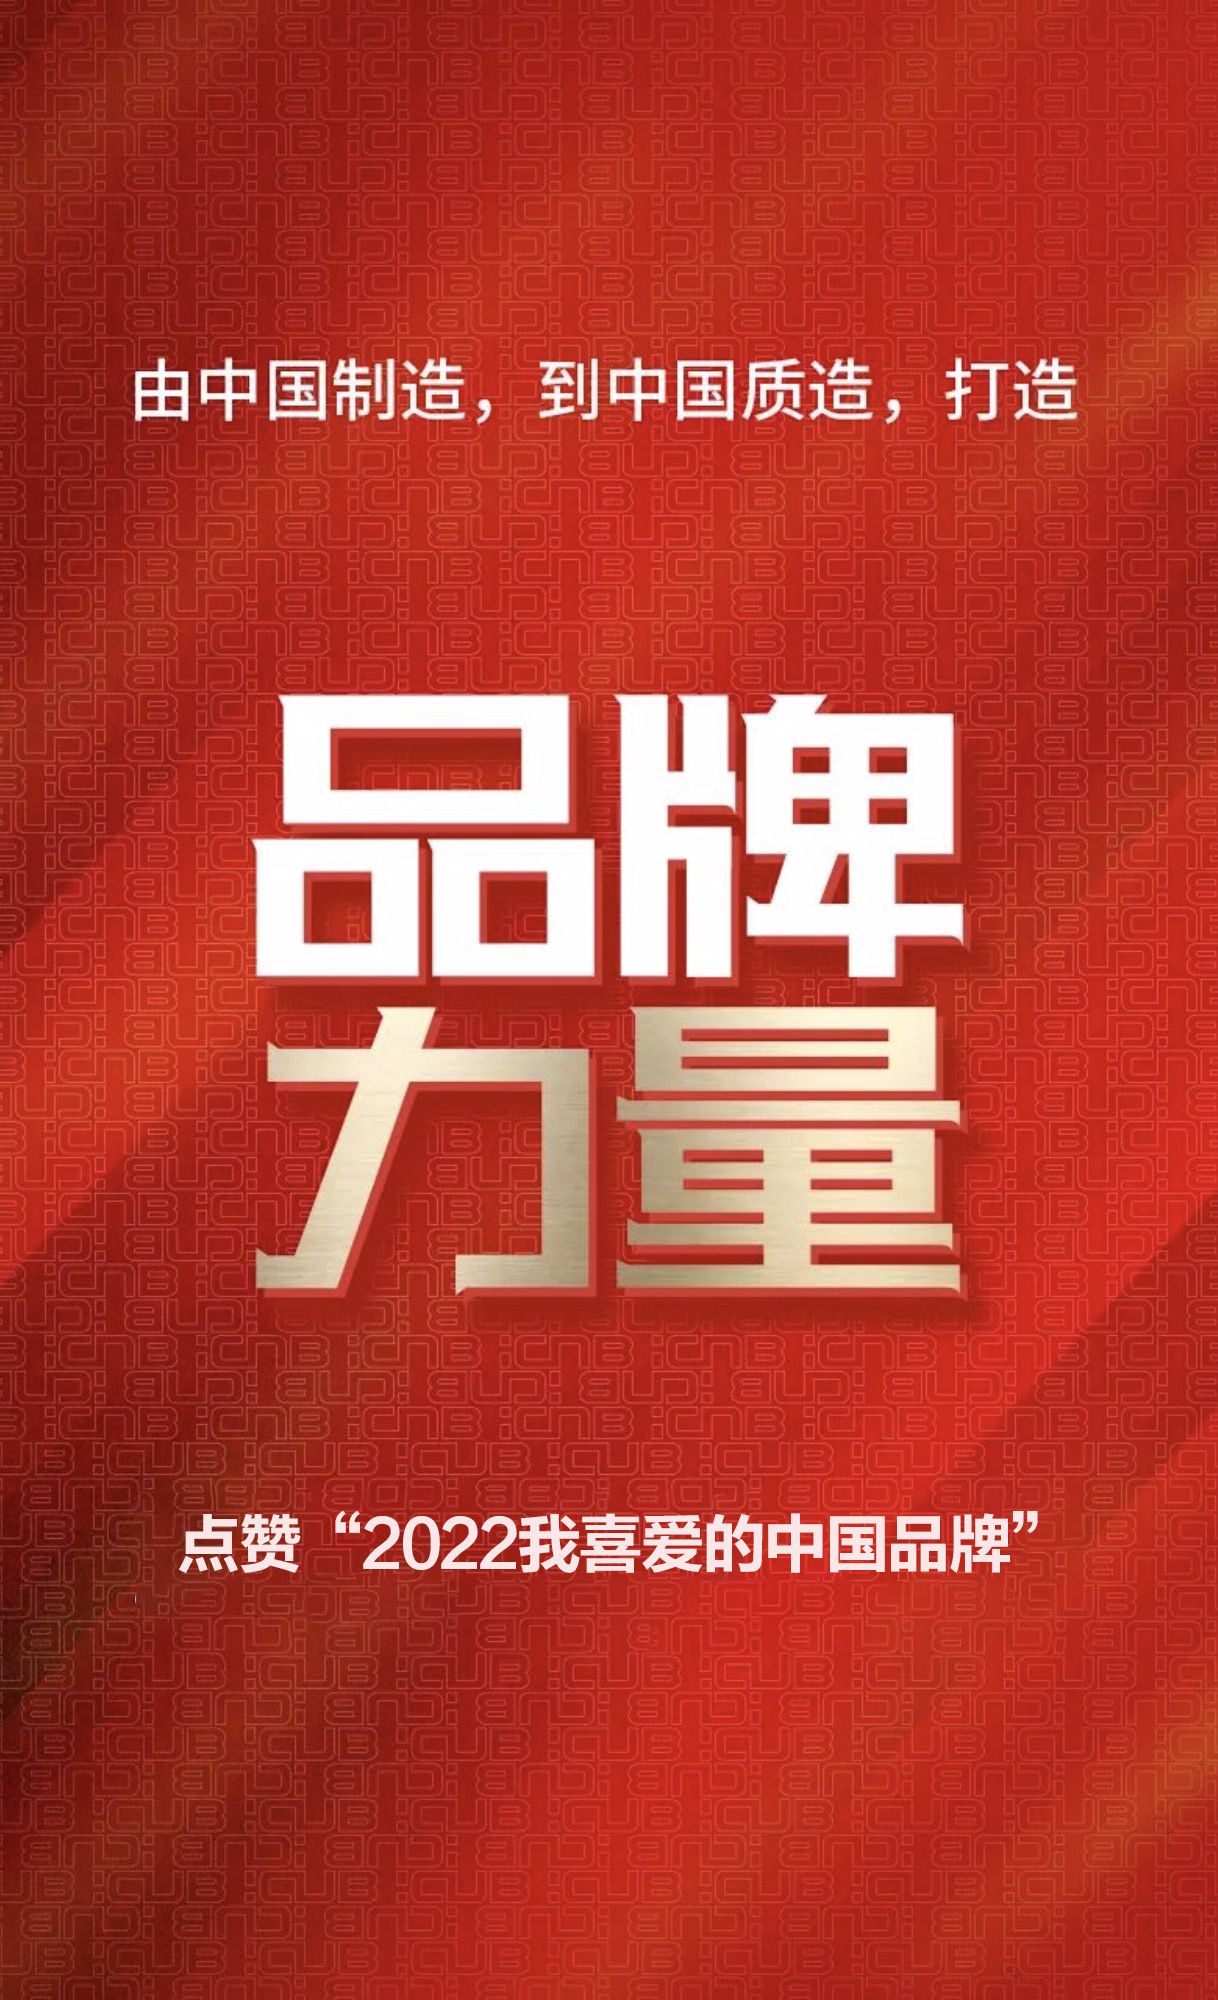 点赞“2022我喜爱的中国品牌”即将开启